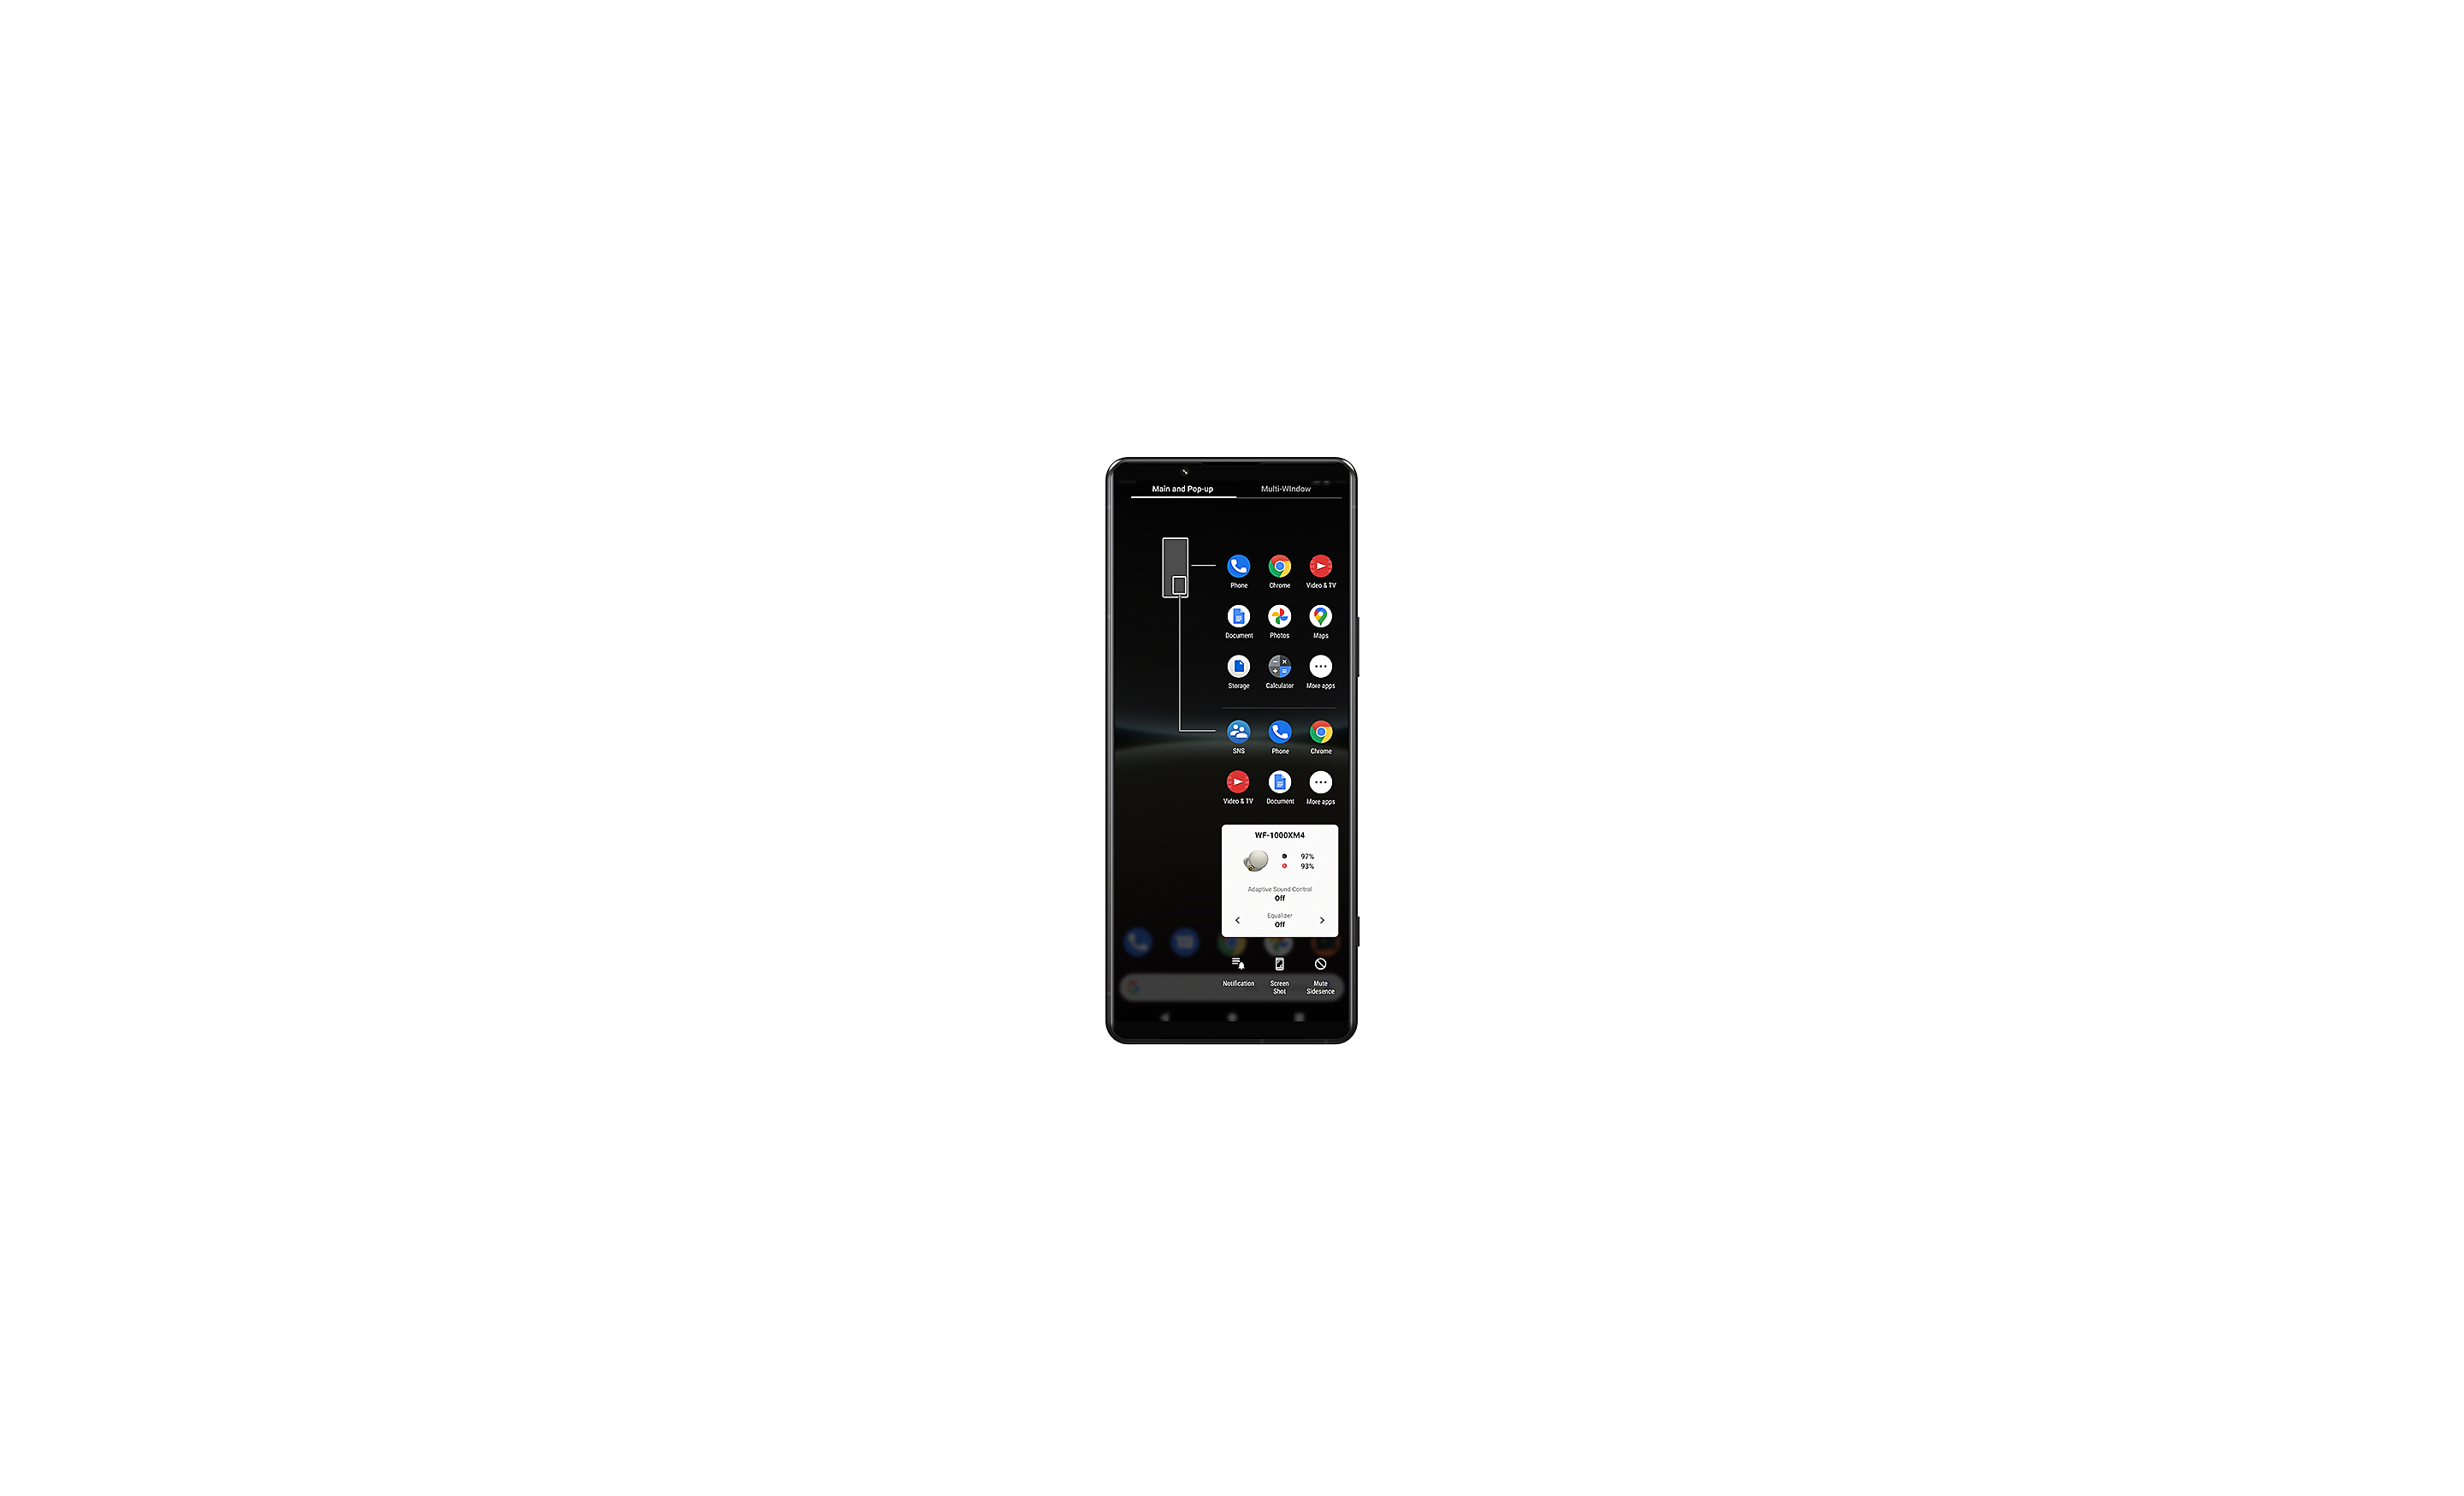 Xperia pametni telefon, na zaslonu je prikazano korisničko sučelje upravitelja prozora